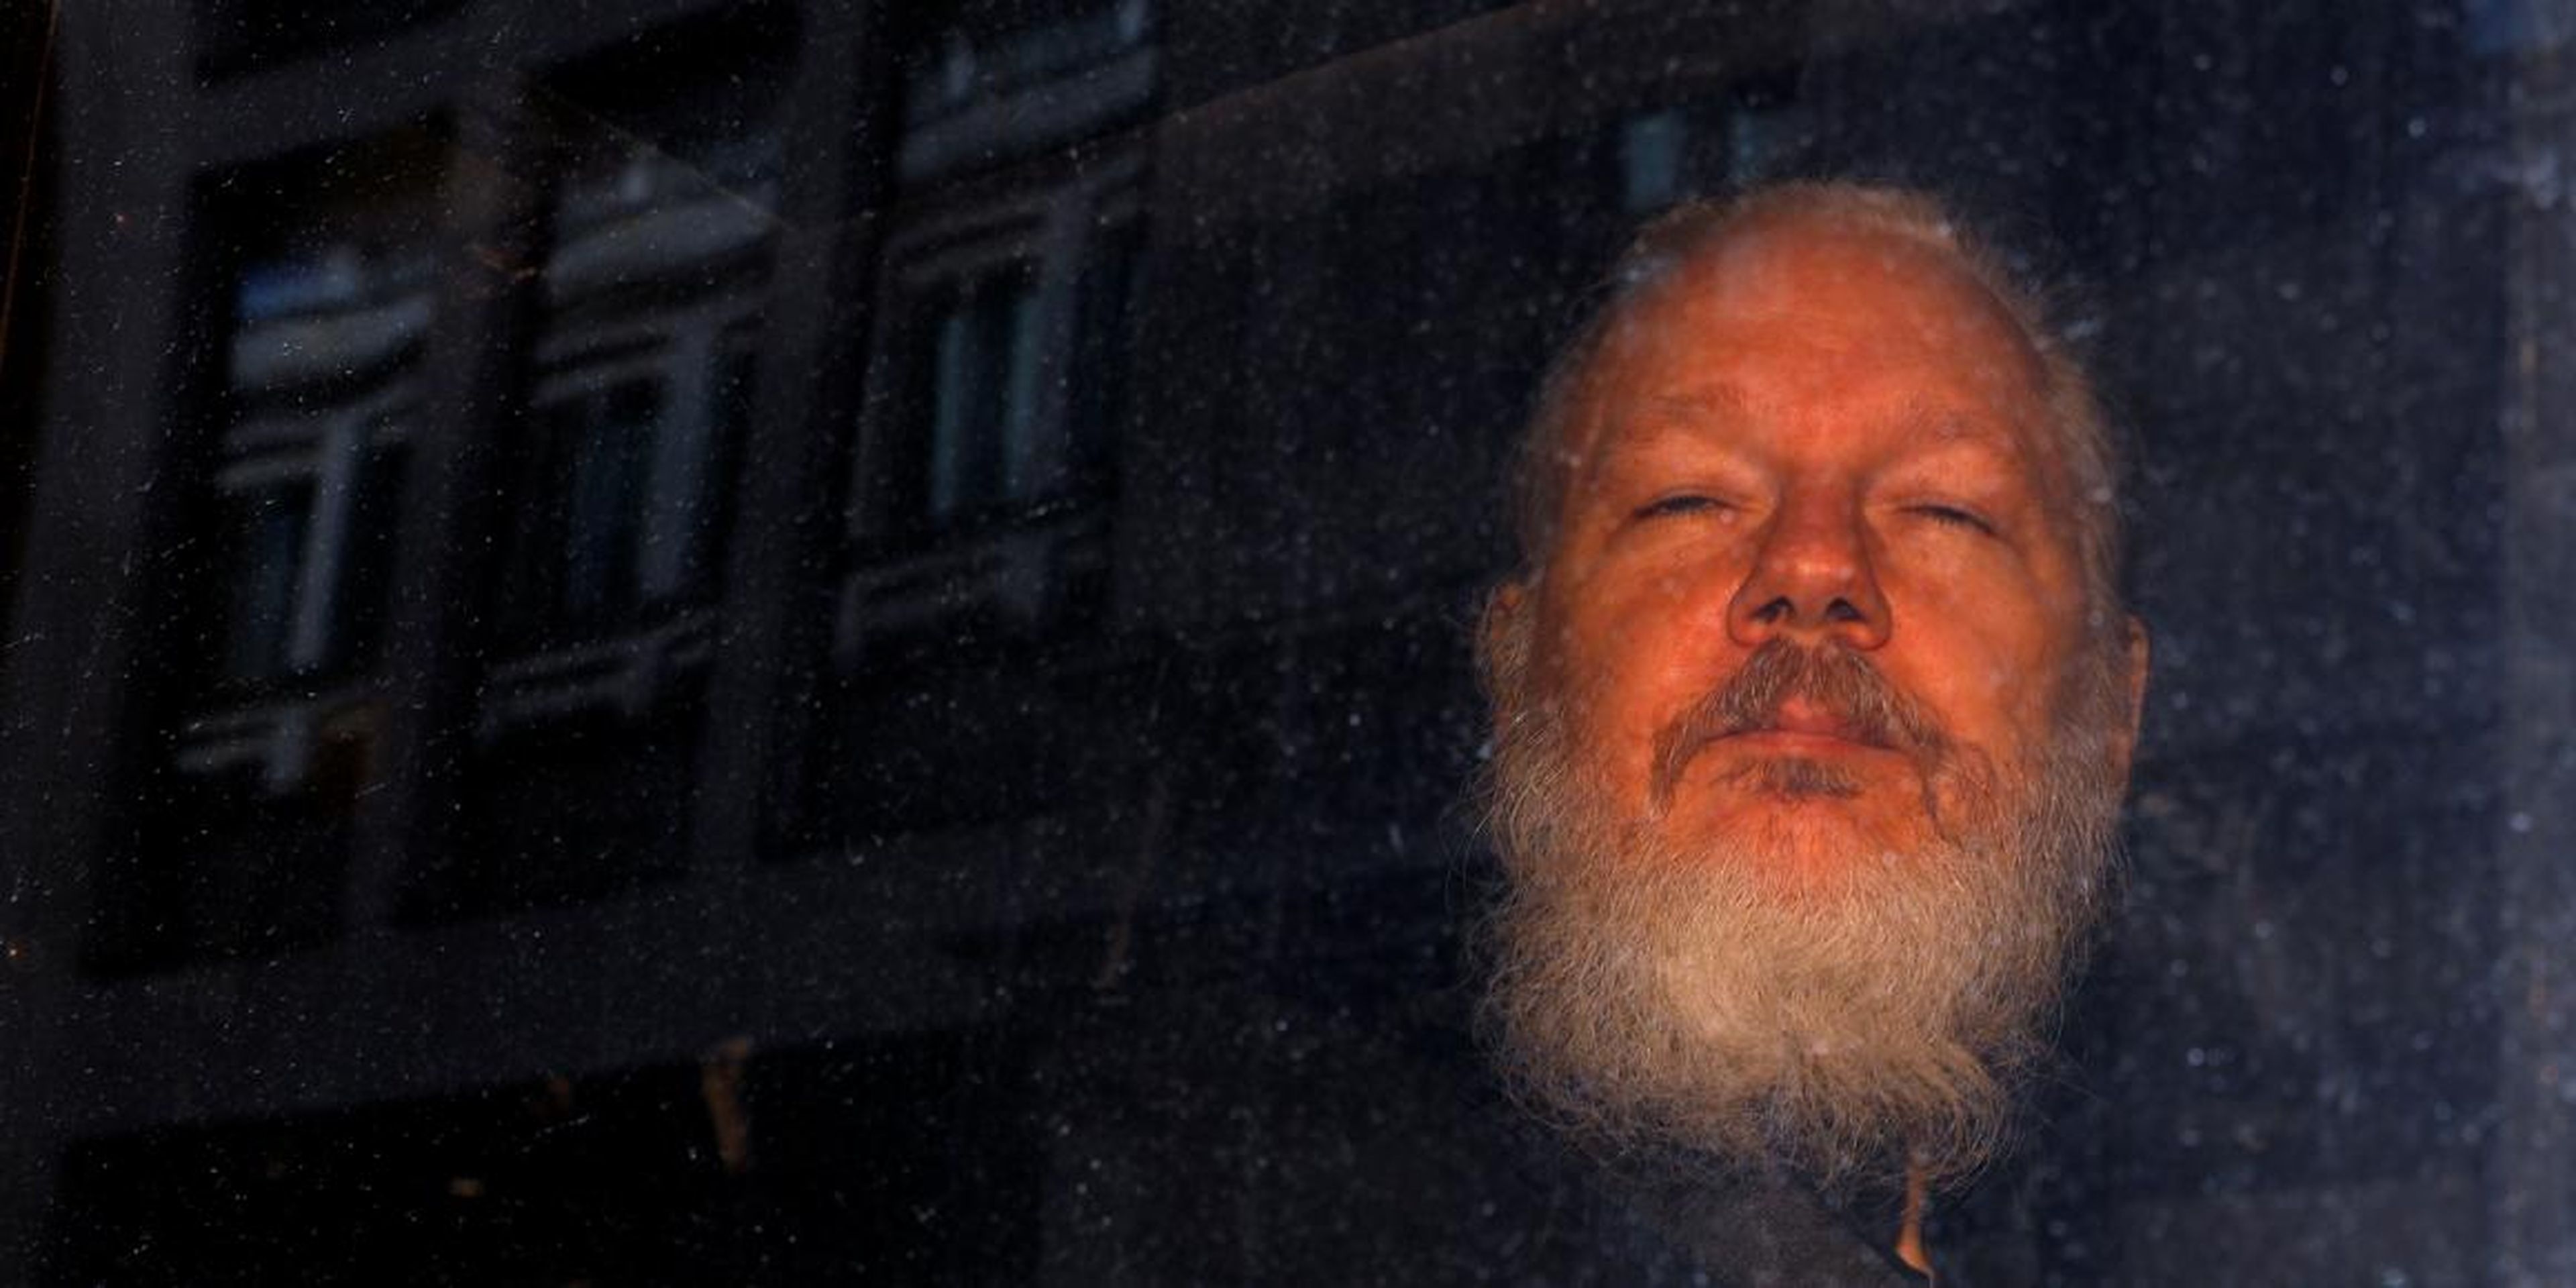 WikiLeaks founder Julian Assange is seen as he leaves a police station in London on April 11, 2019.